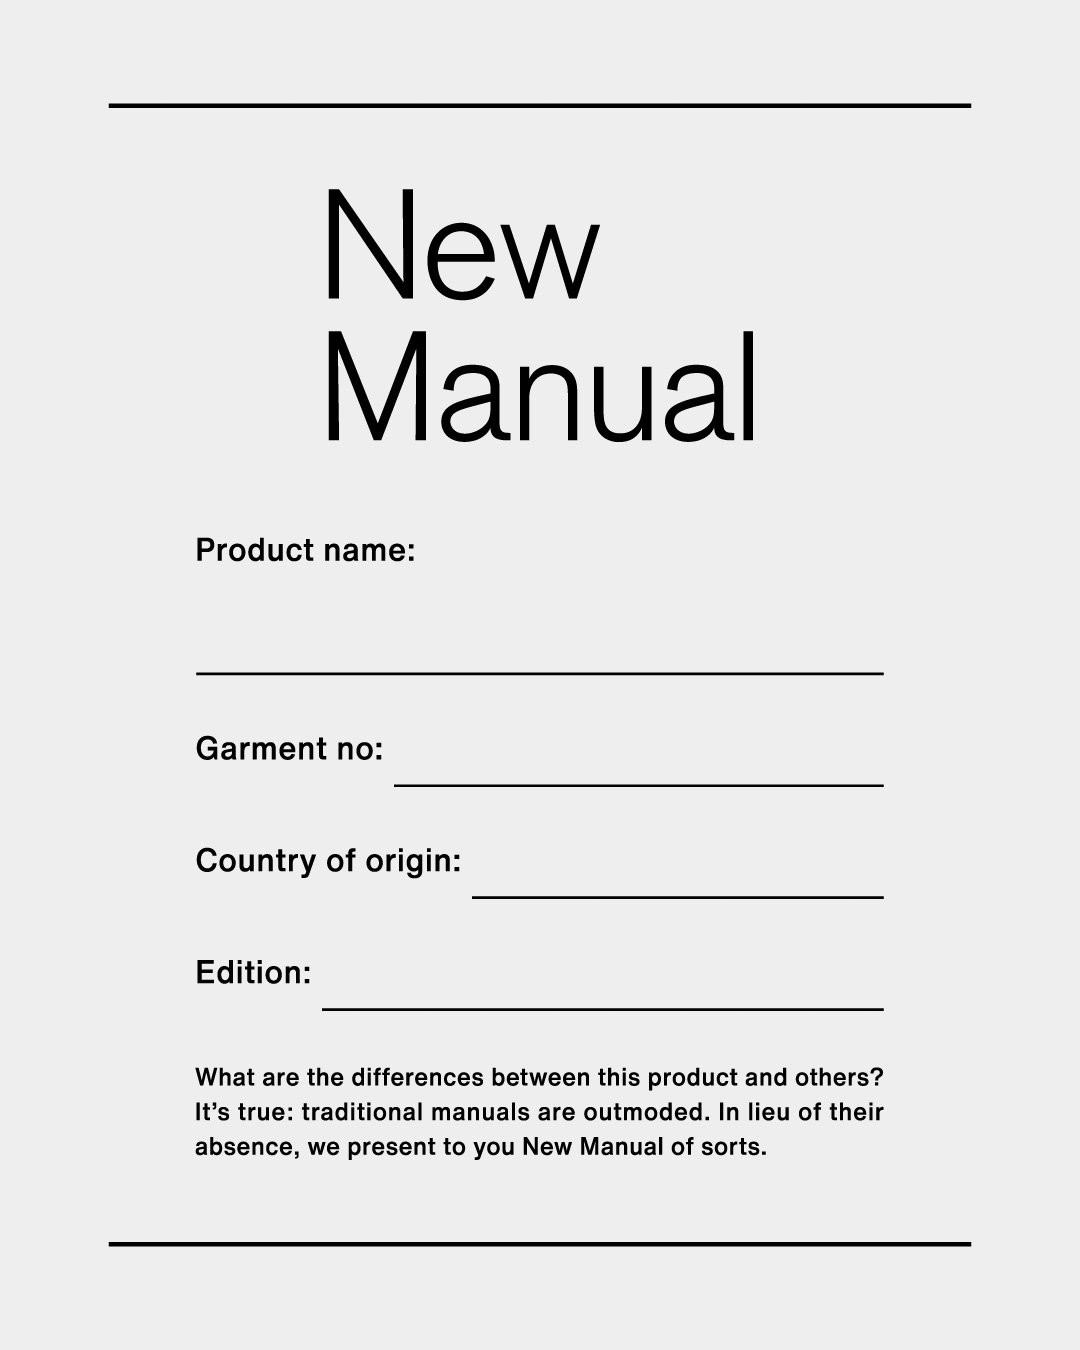 ヴィンテージアイテムを捉え直す新ブランド「New Manual」がデビュー、ディレクターはベルベルジン藤原裕